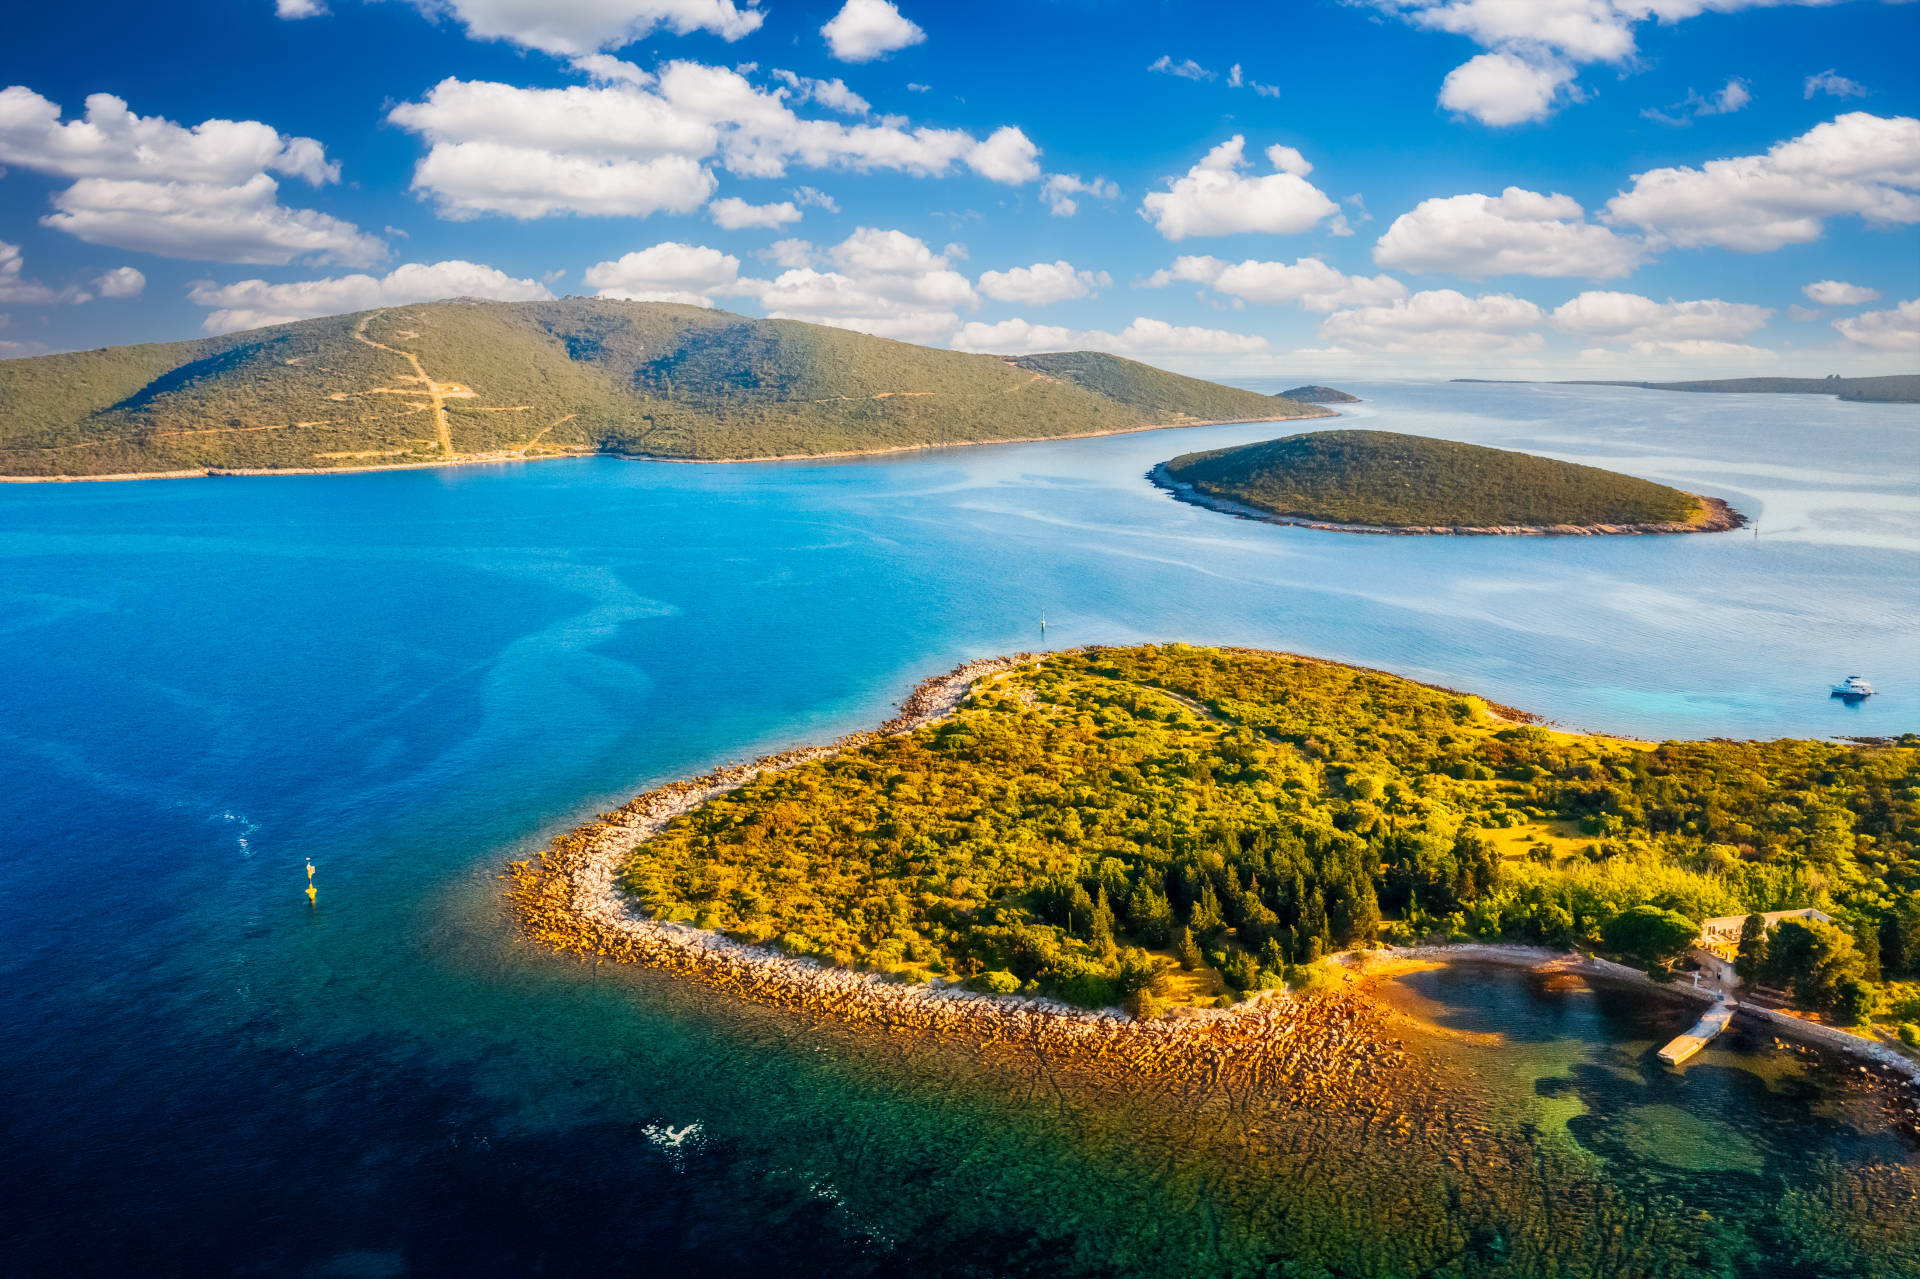 Island Ilovik in North Adriatic Region in Croatia